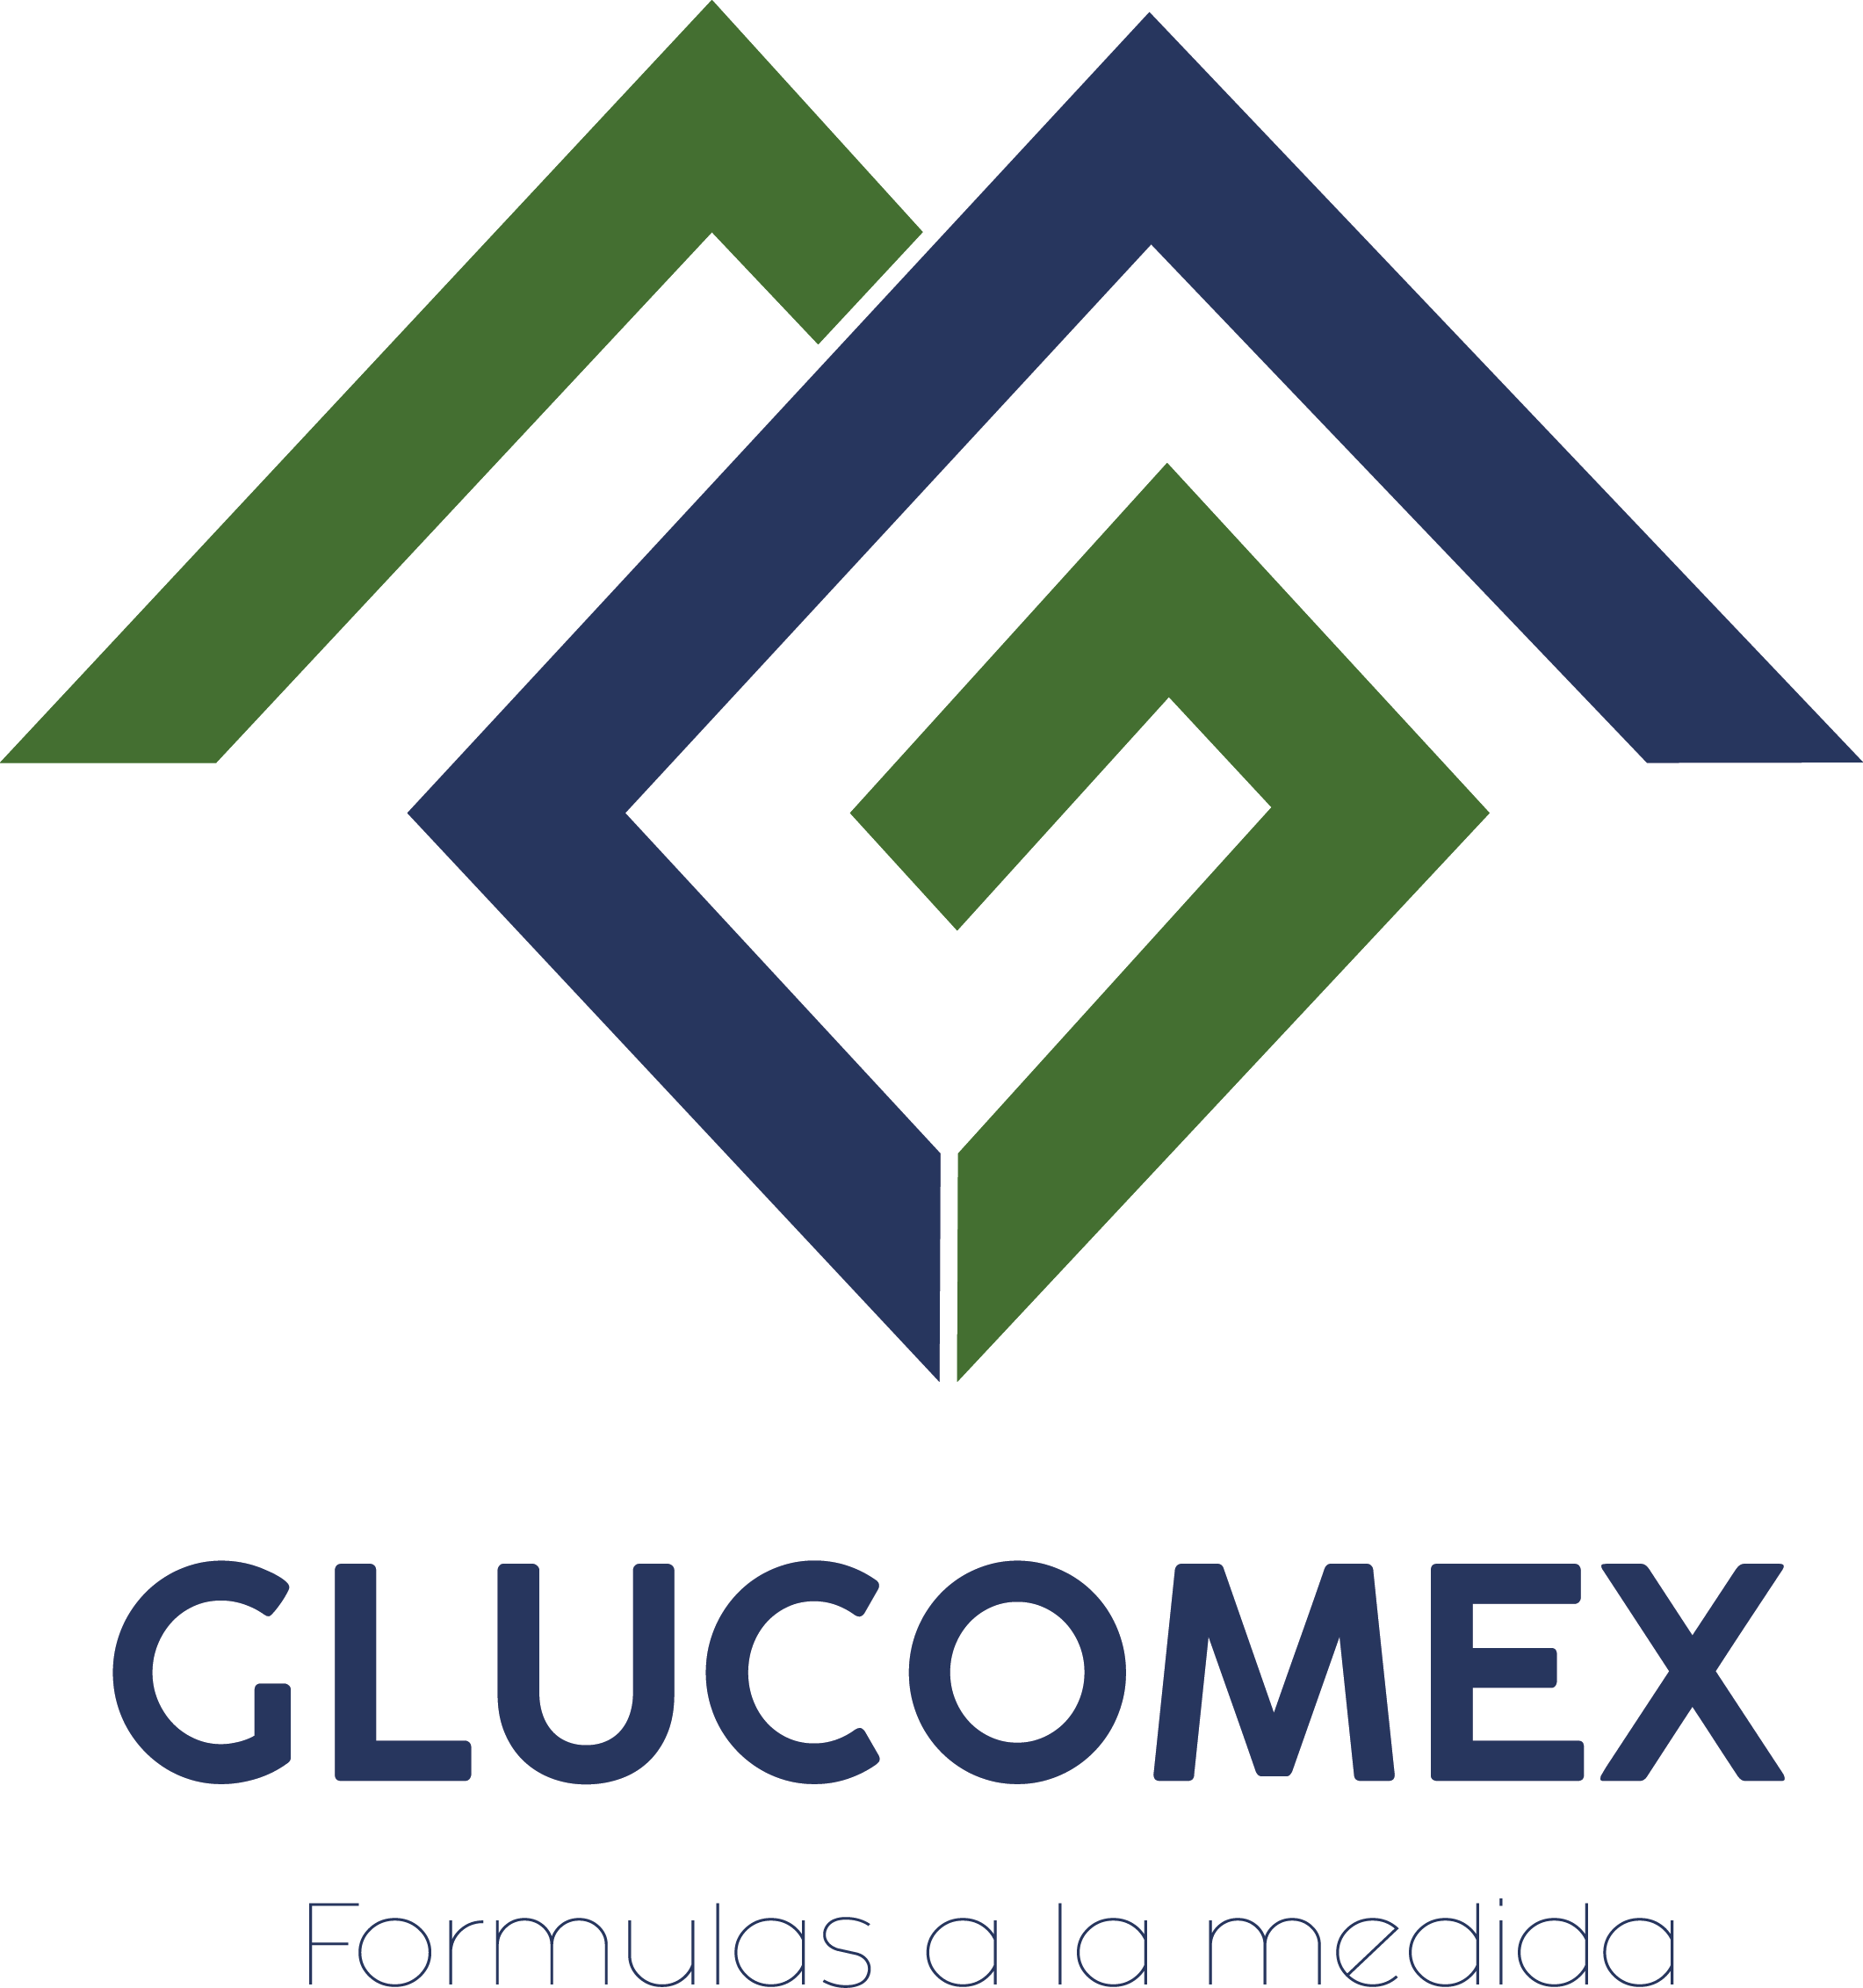 GLUCOMEX